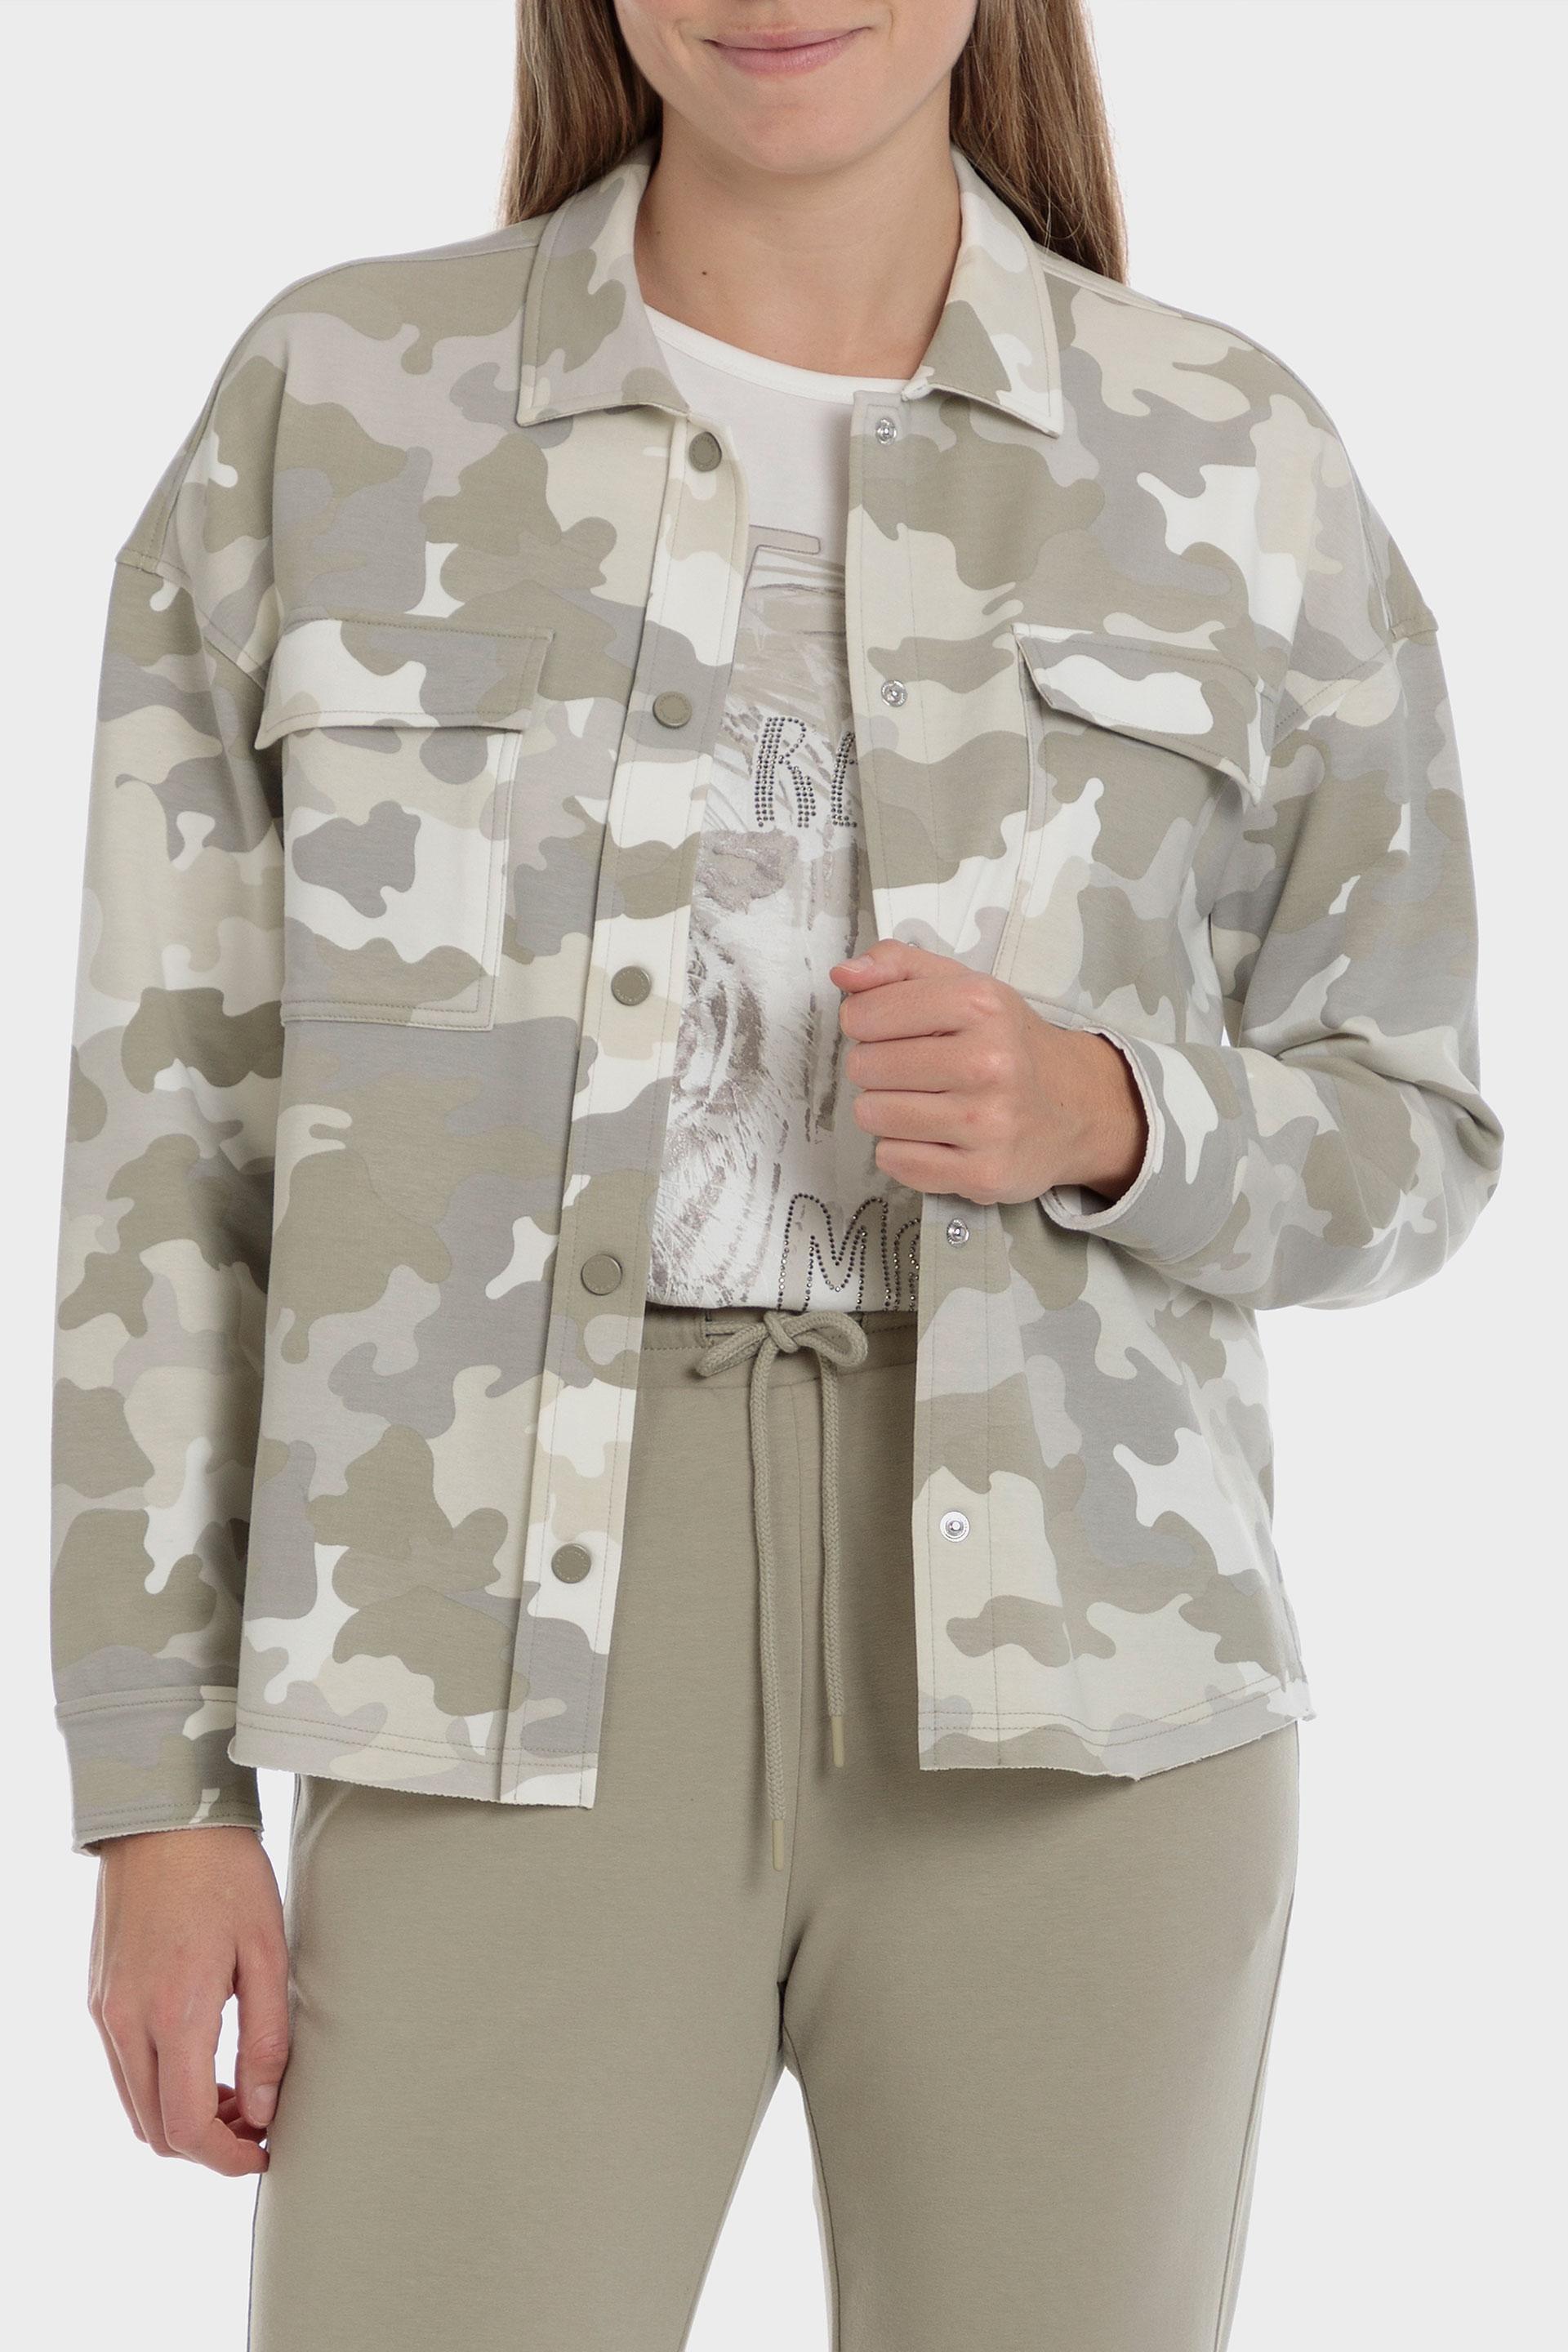 Punt Roma - Multicolour Camouflage Jacket